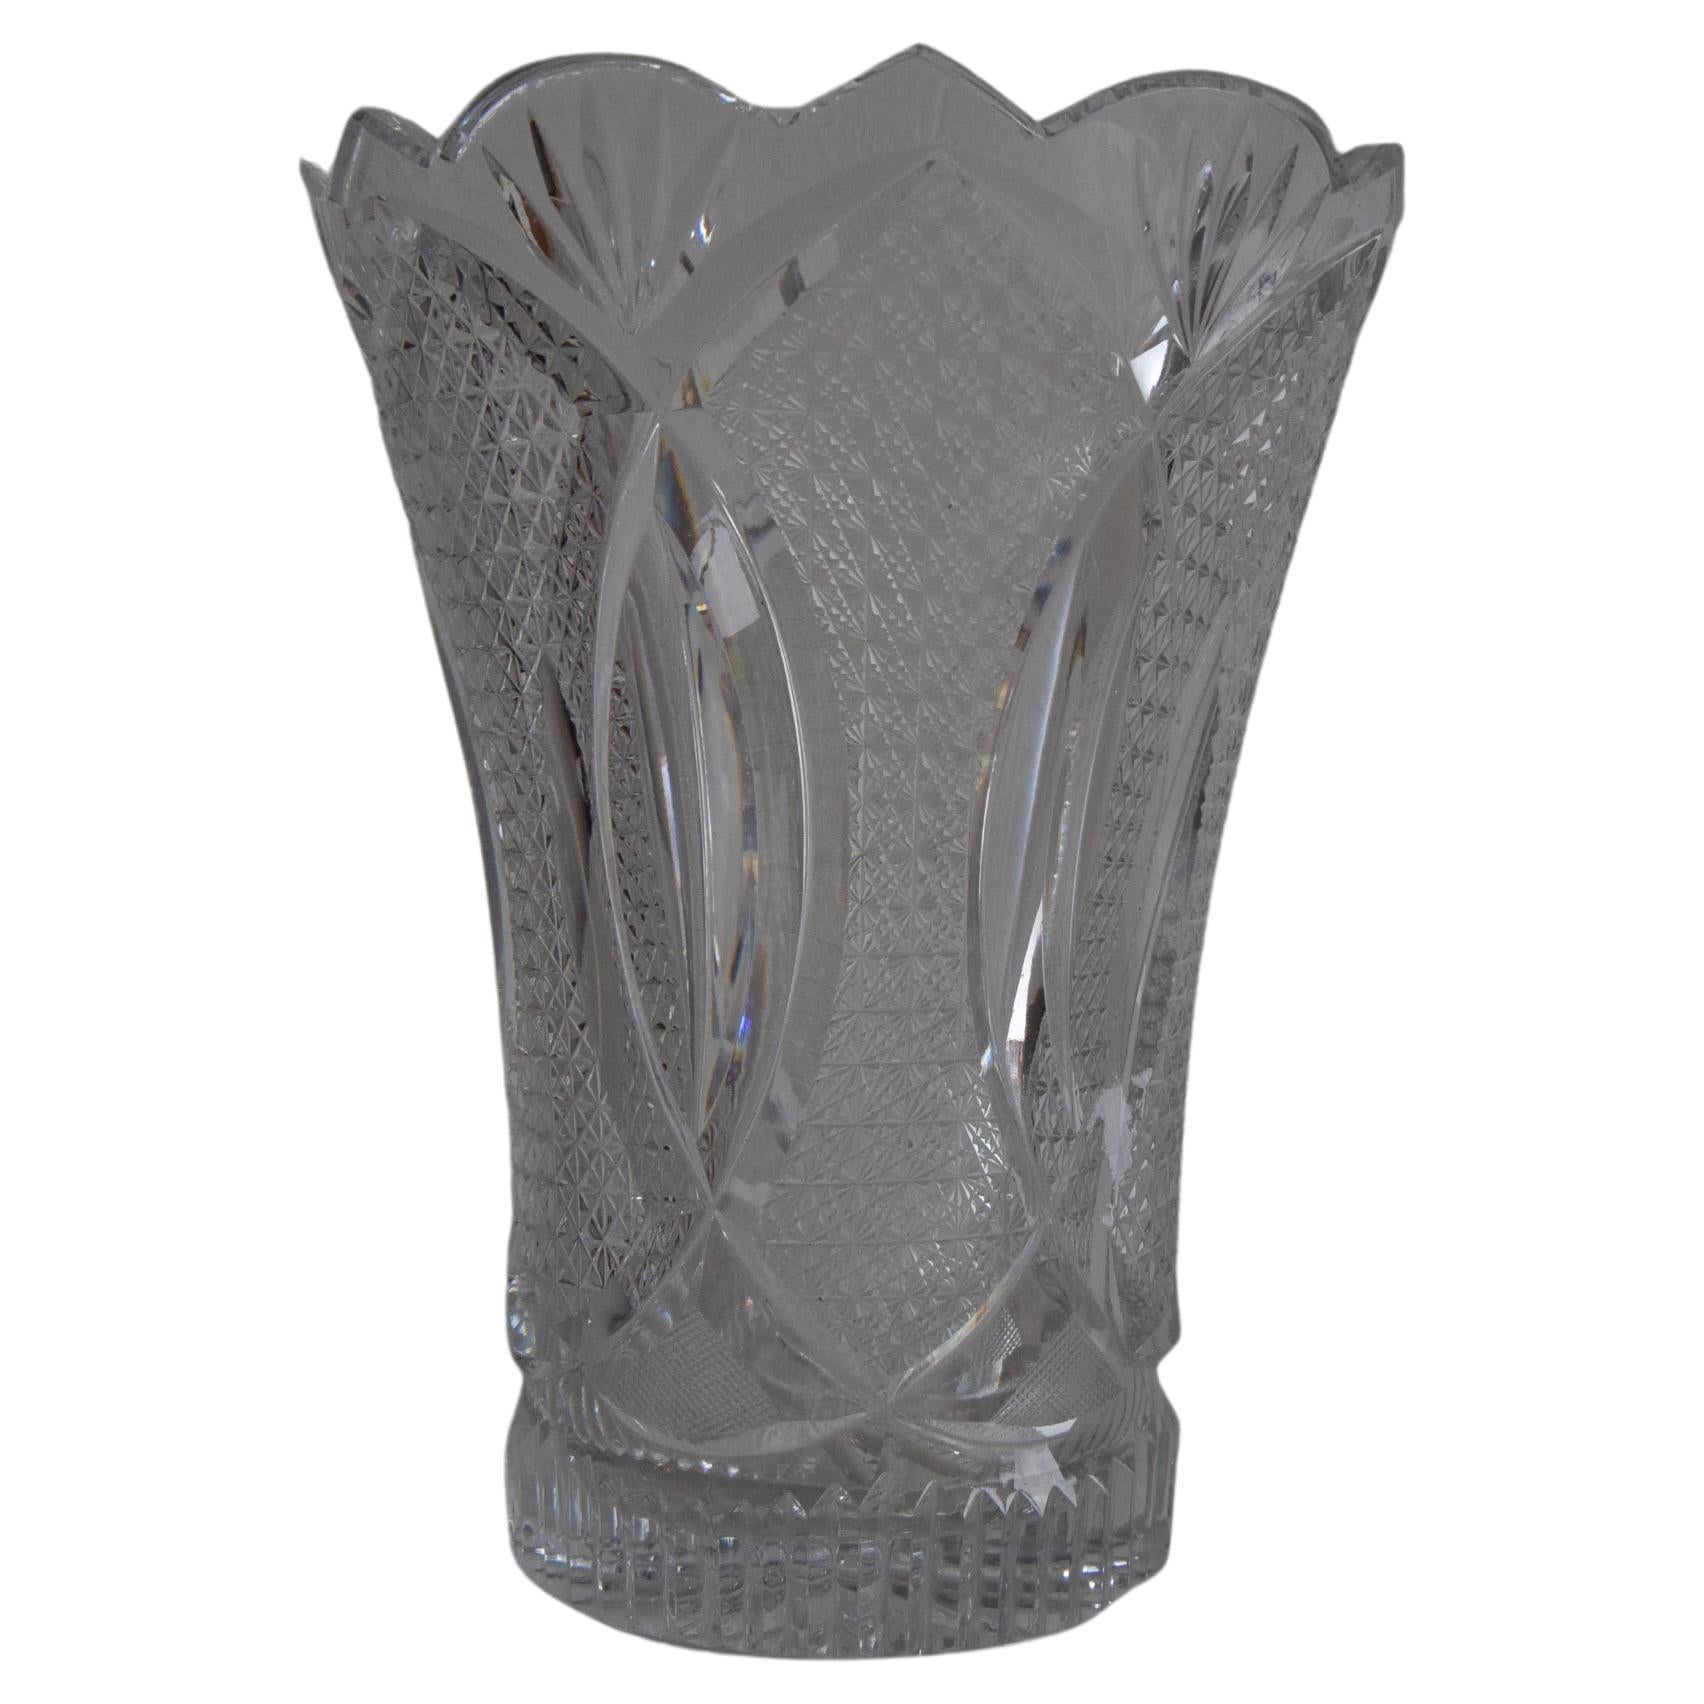 
Fabriqué en Tchécoslovaquie
Fabriqué en verre taillé et en cristal
Le vase a un petit éclat sur le fond.
Repolissage
Bon état d'origine